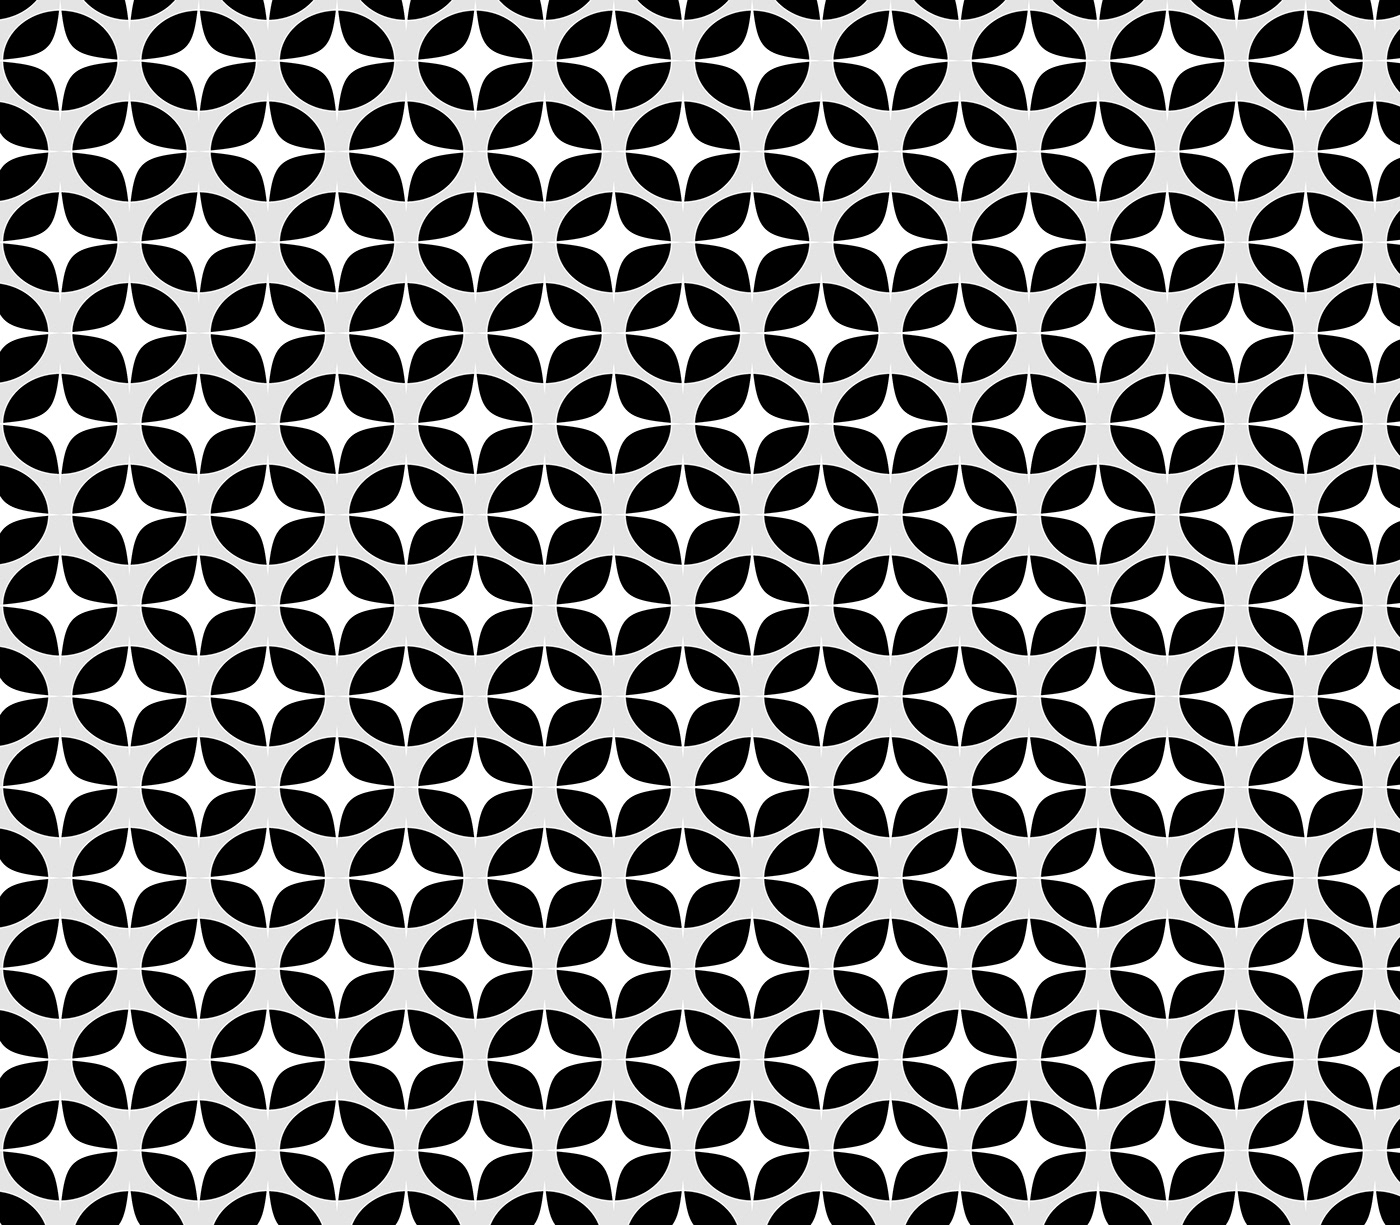 patternandprint Patterncutter patterndress patternillustration Patterning patternmatching patternmix patternshirt patterntiles patternvilla